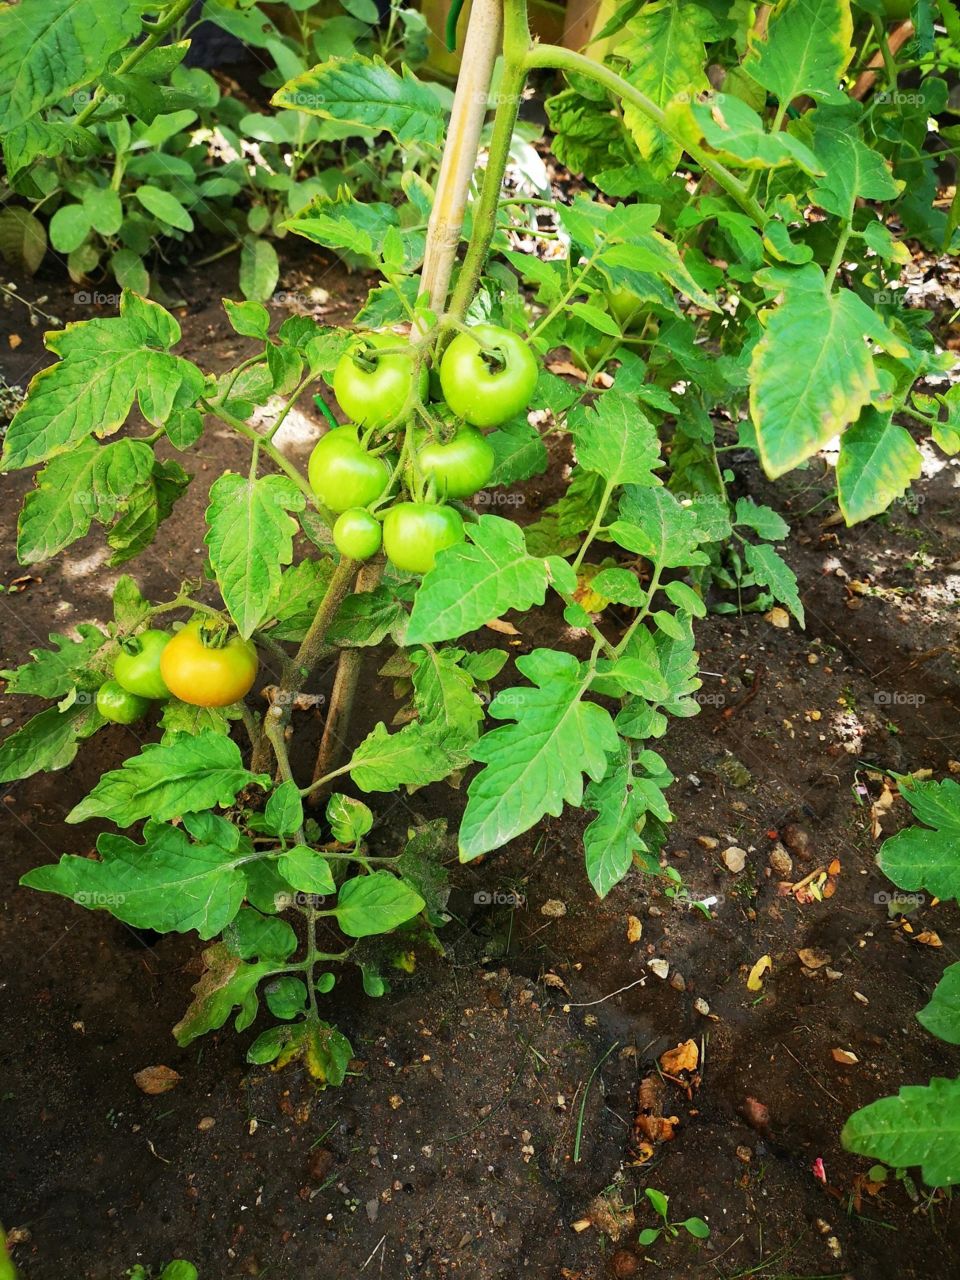 Tomato plants 